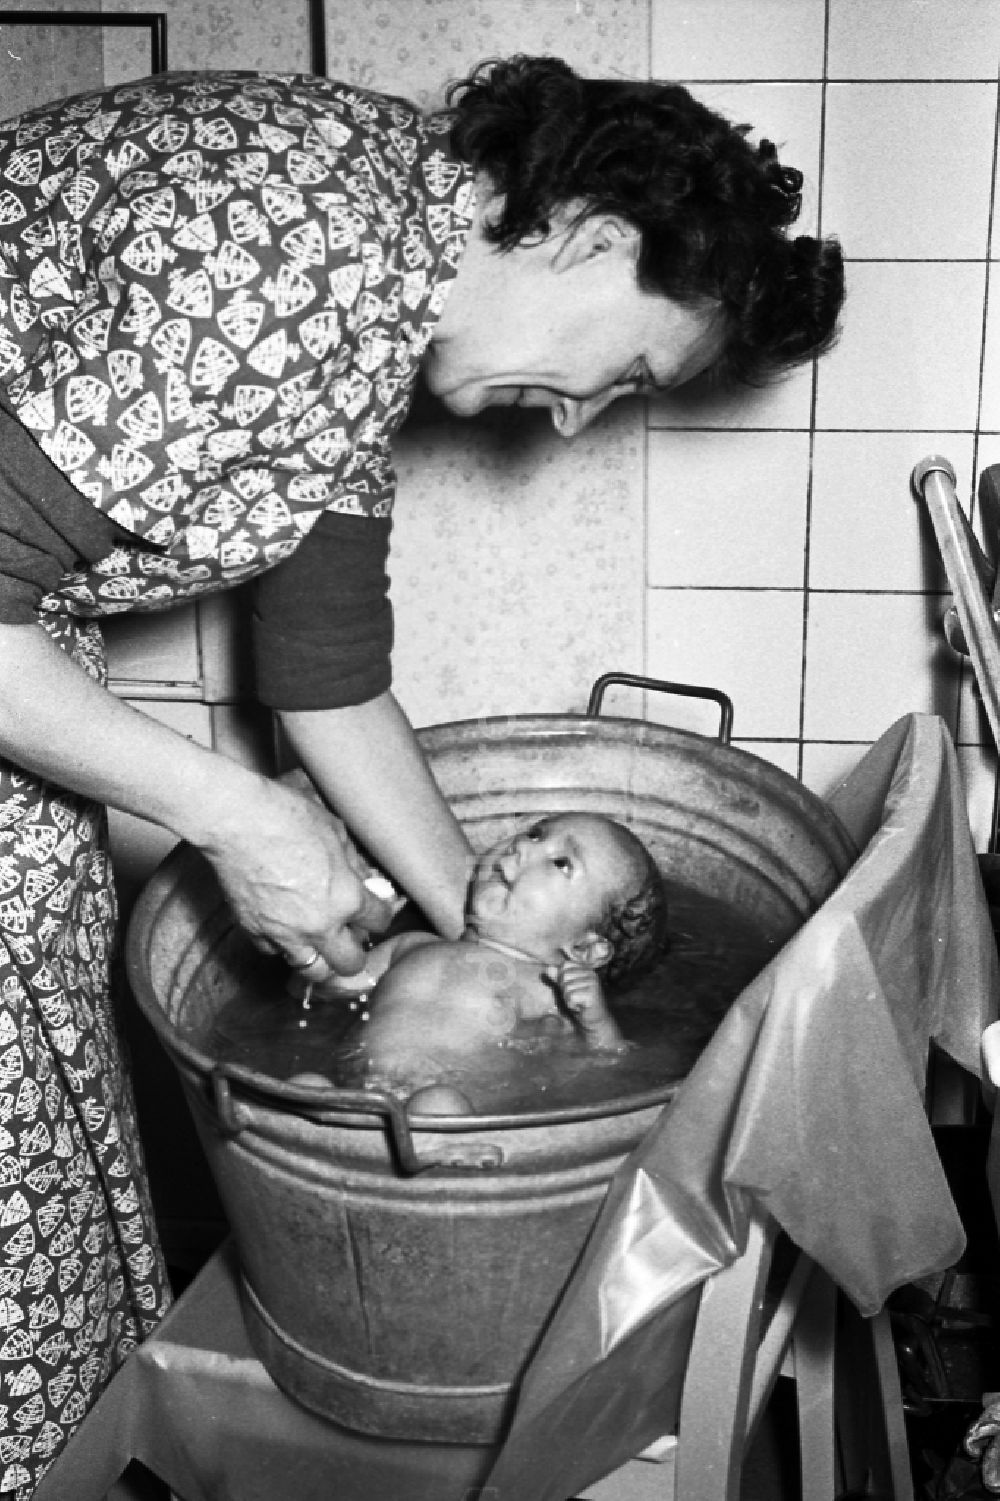 DDR-Bildarchiv: Merseburg - Frau badet ein Baby in einer Zinkwanne in Merseburg in Sachsen-Anhalt in der DDR